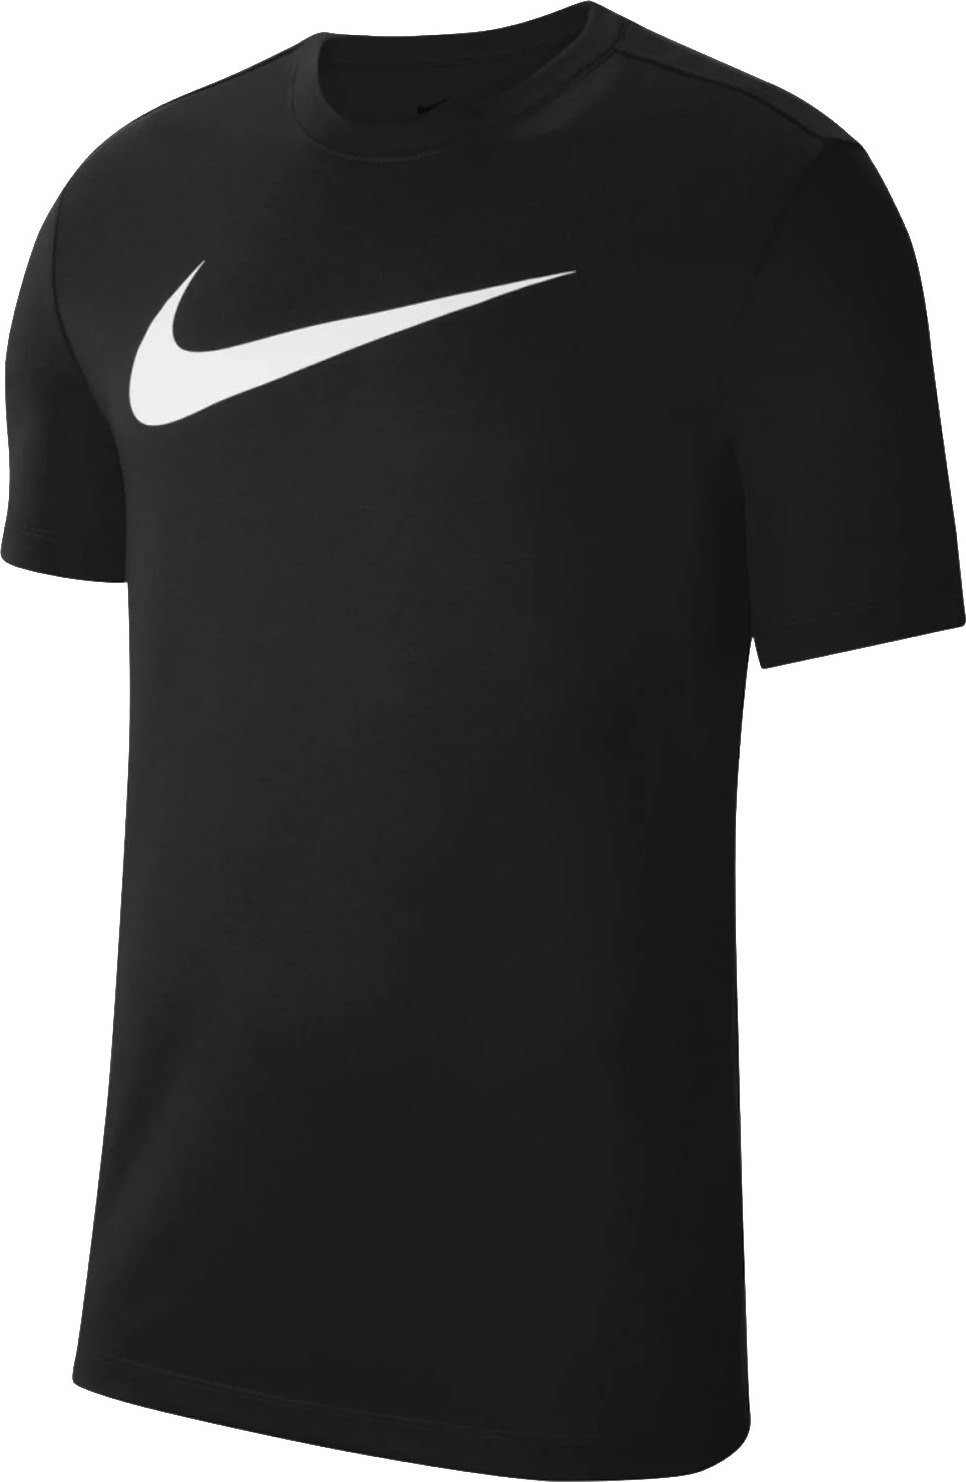 Černé sportovní tričko Nike Dri-FIT Park Tee CW6936-010 Velikost: L